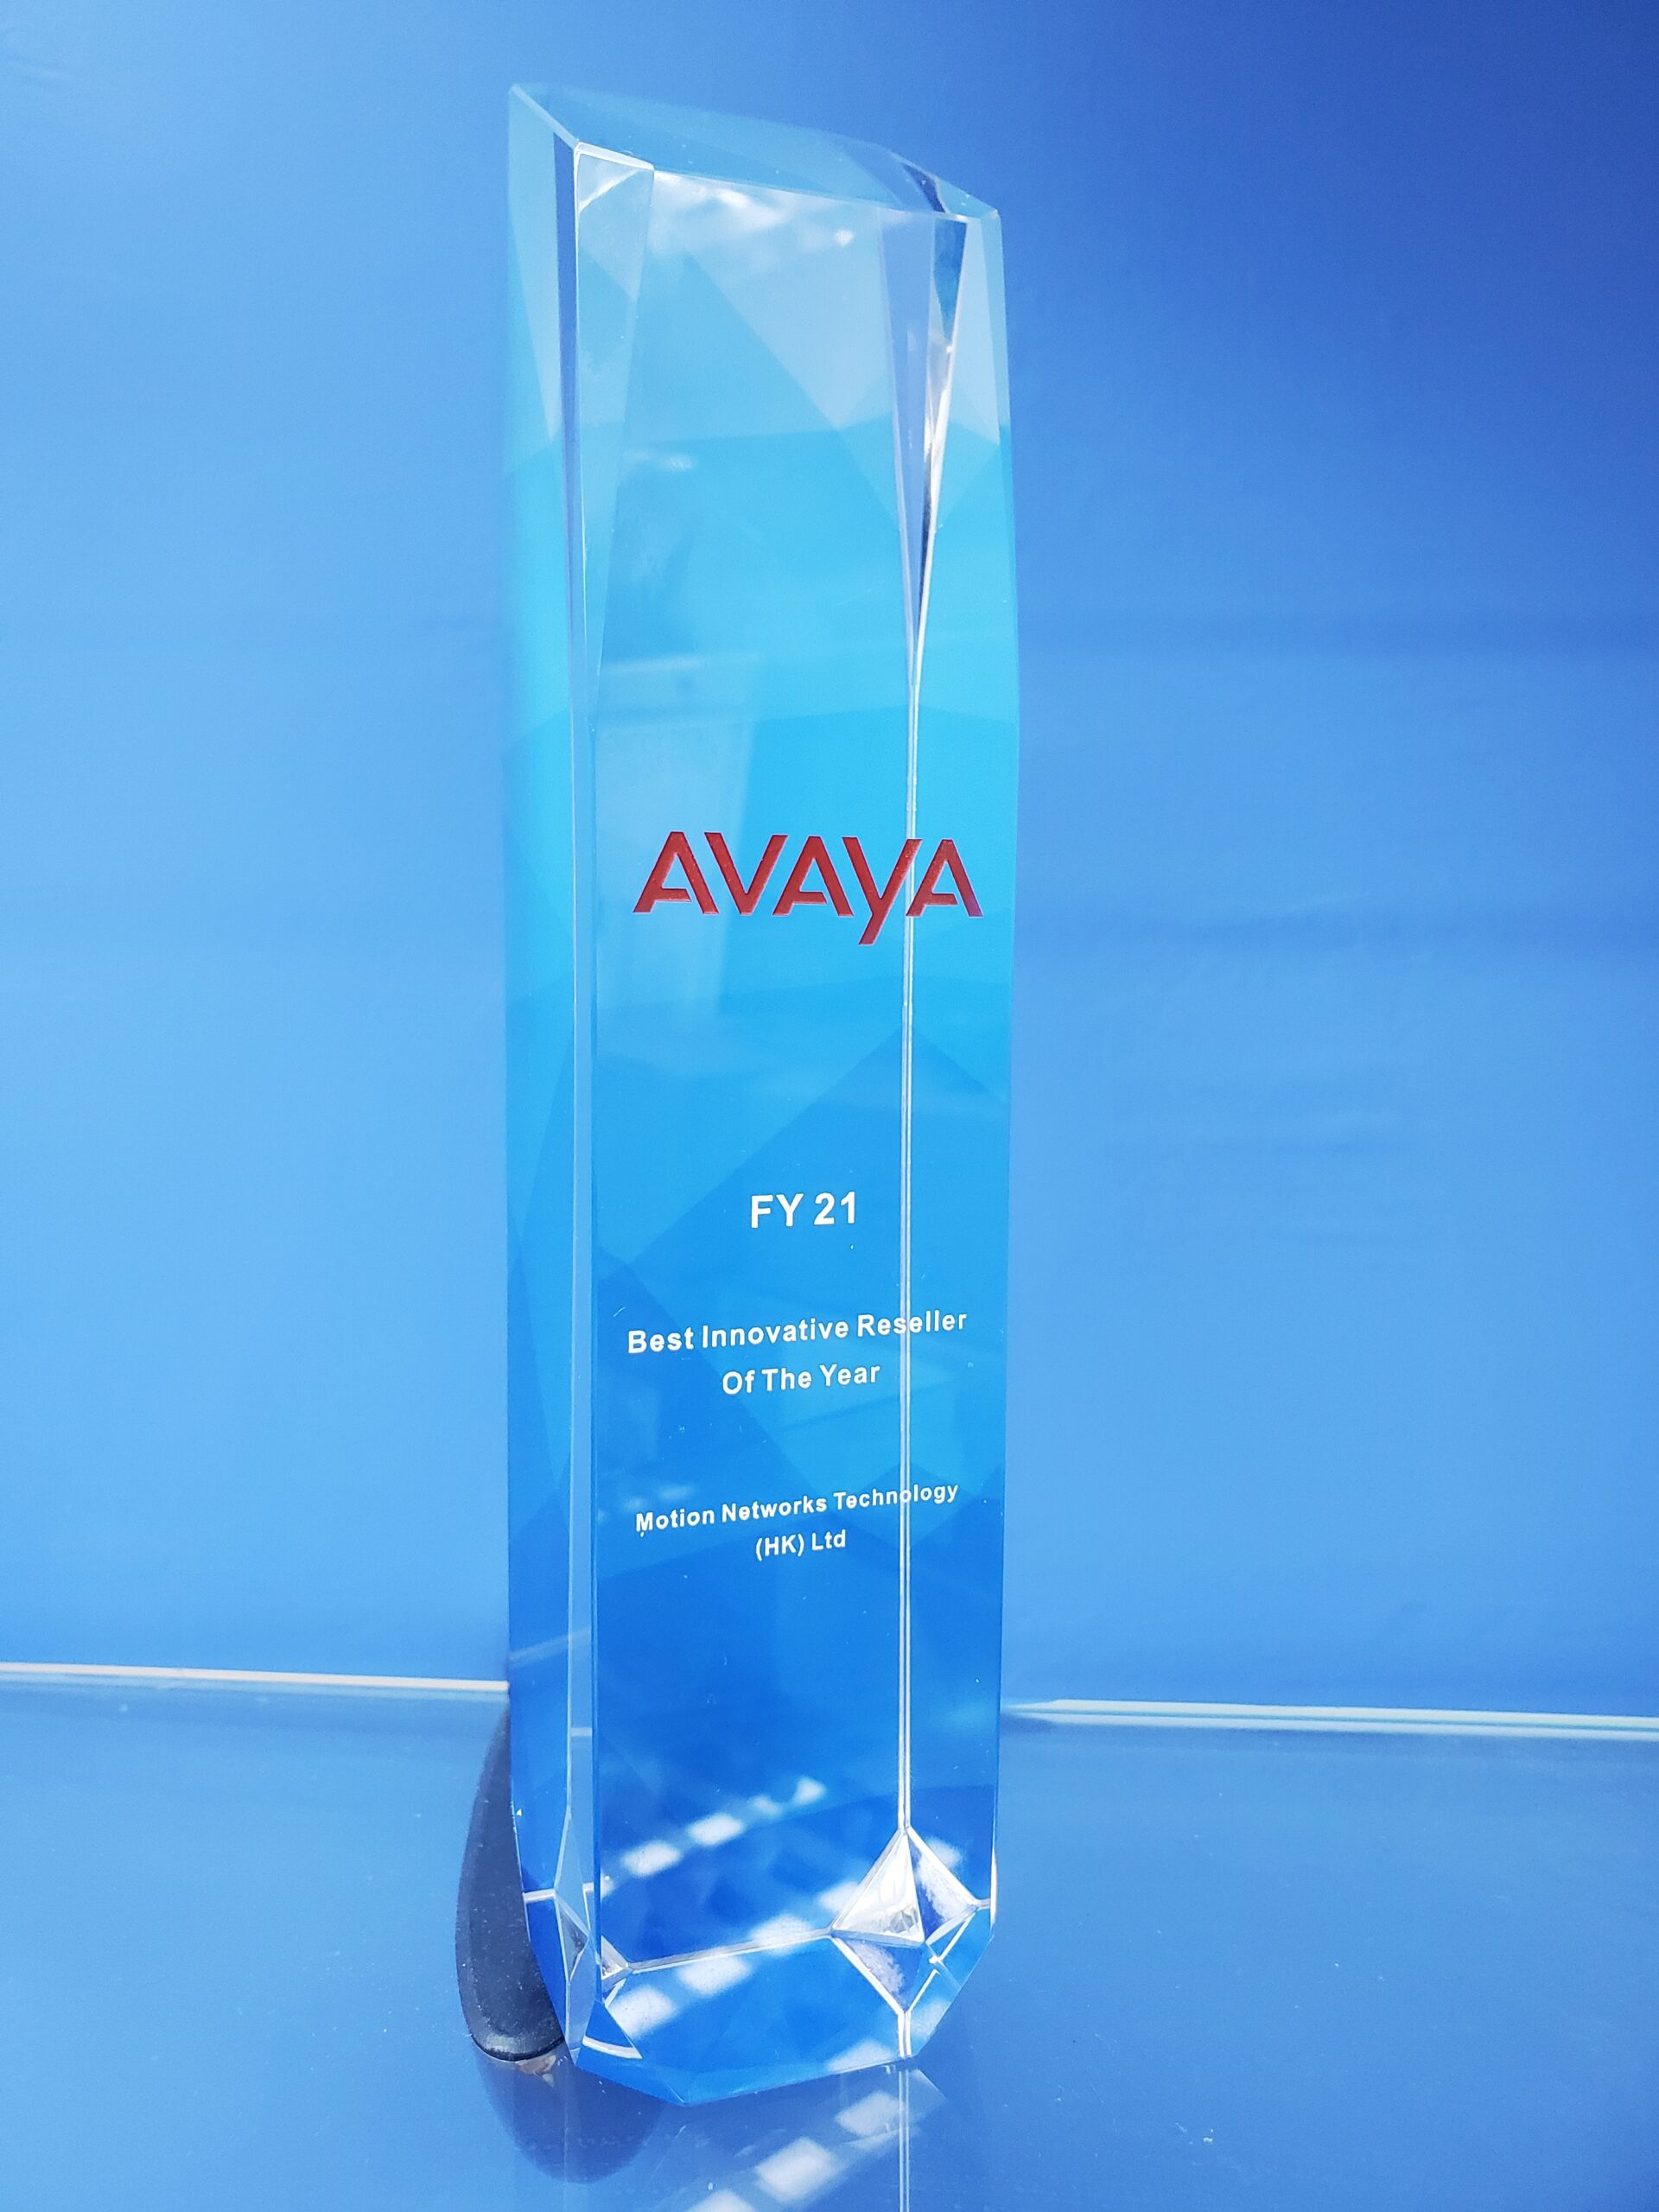 Avaya innovative reseller award